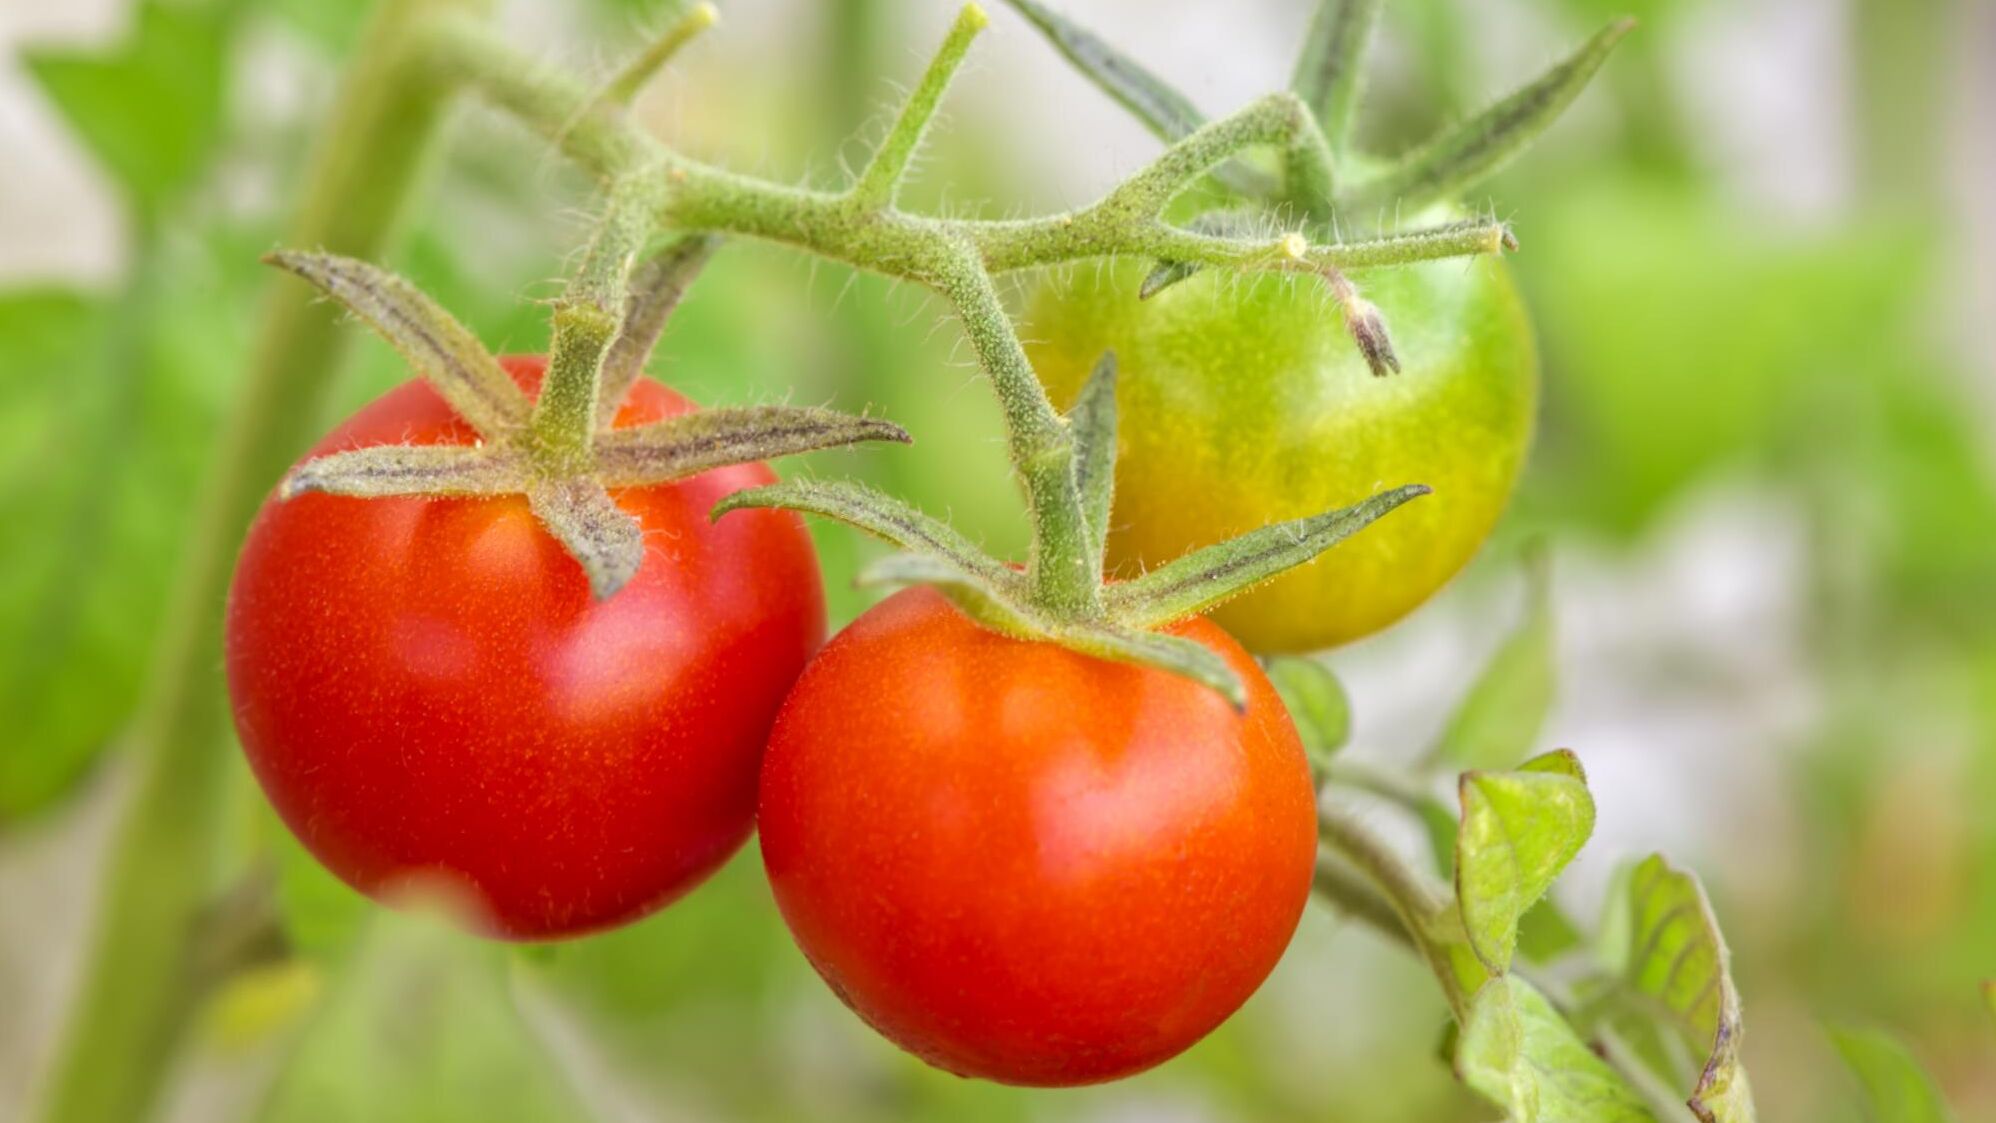 Tomato trellis